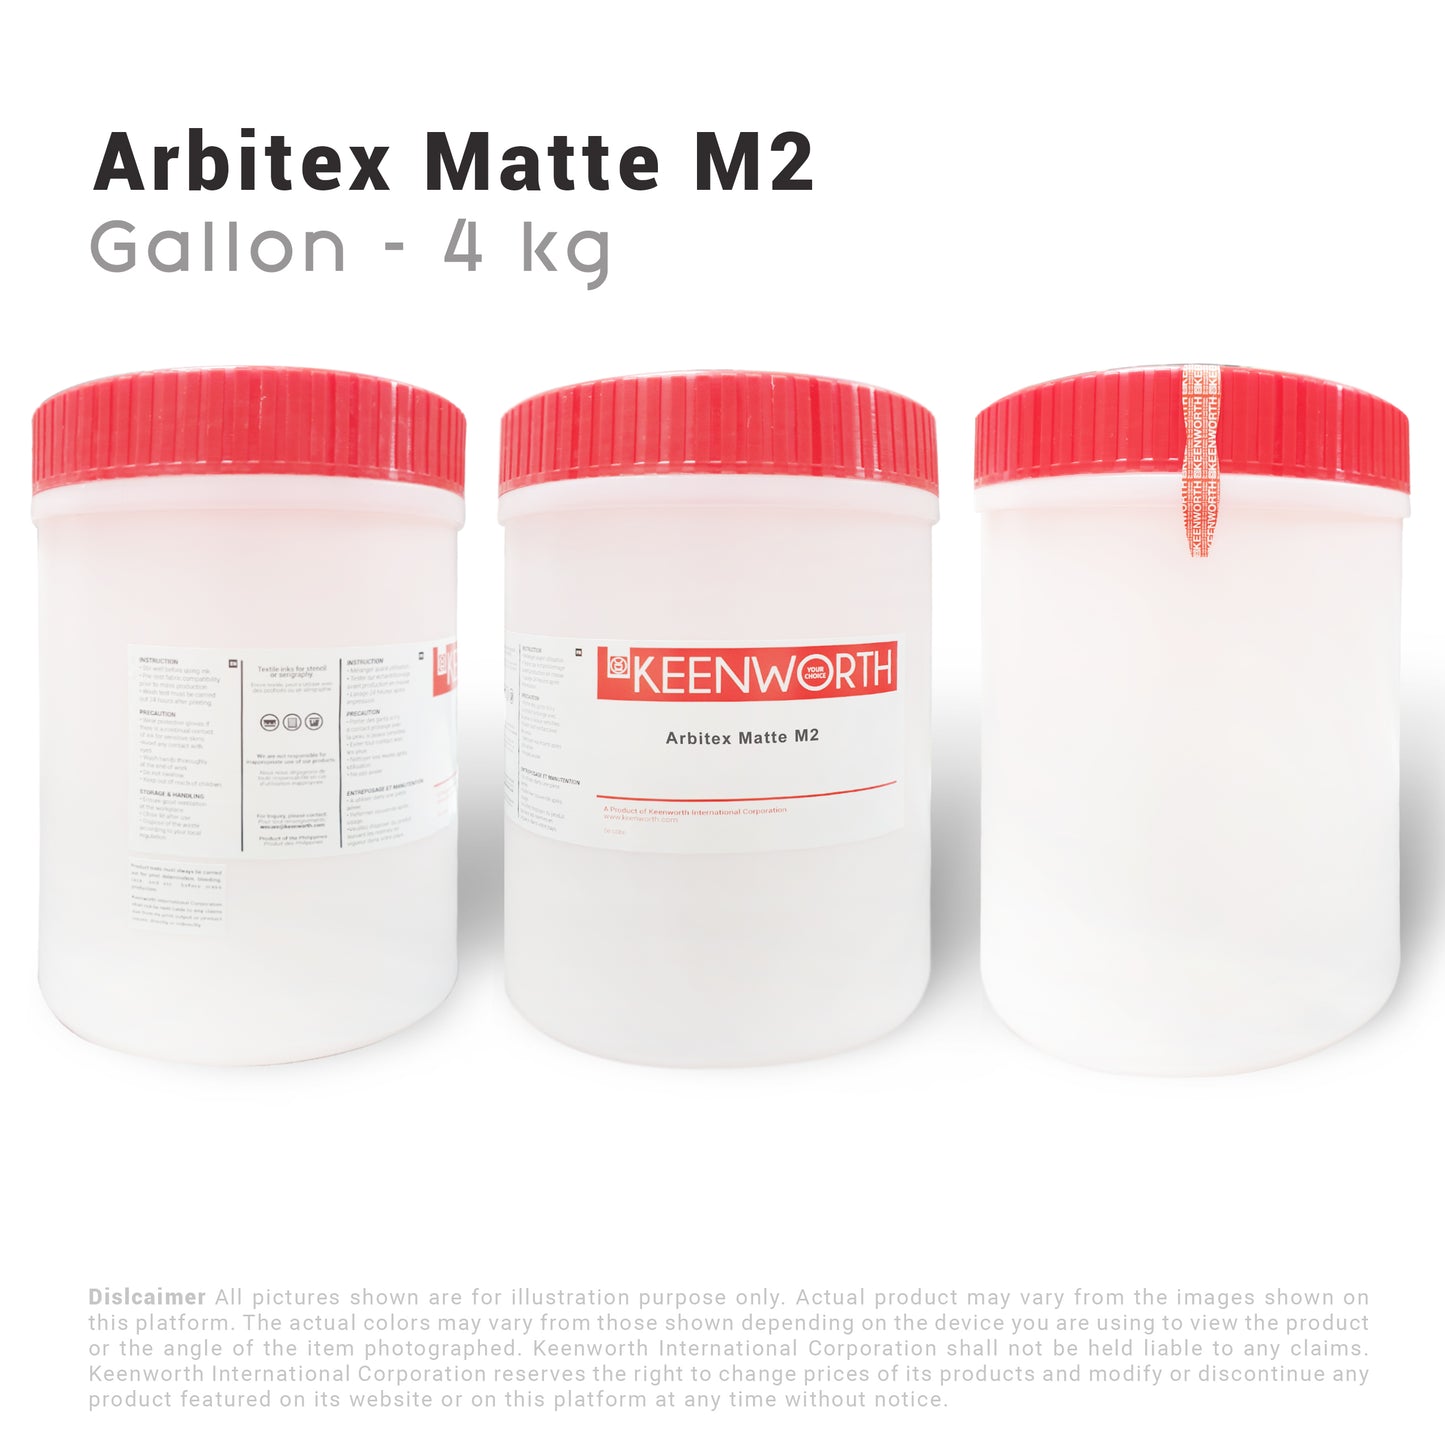 Arbitex Mat M2